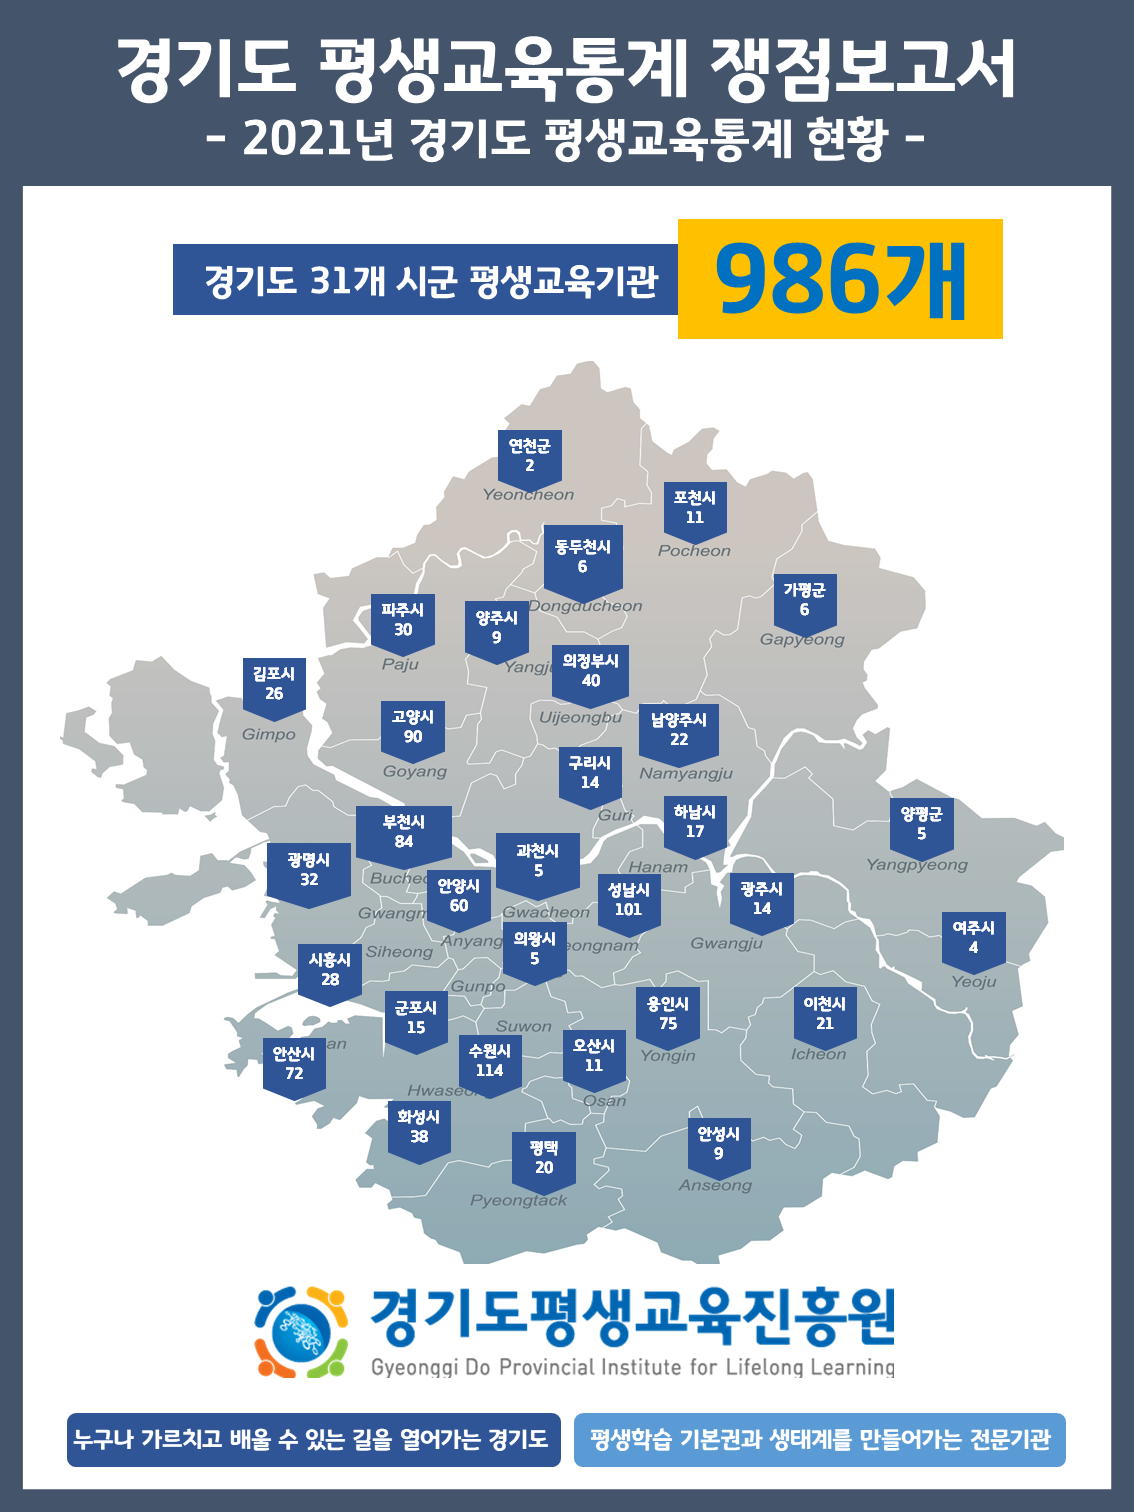 [쟁점보고서] 2021 경기도 평생교육통계: 경기도 평생교육기관